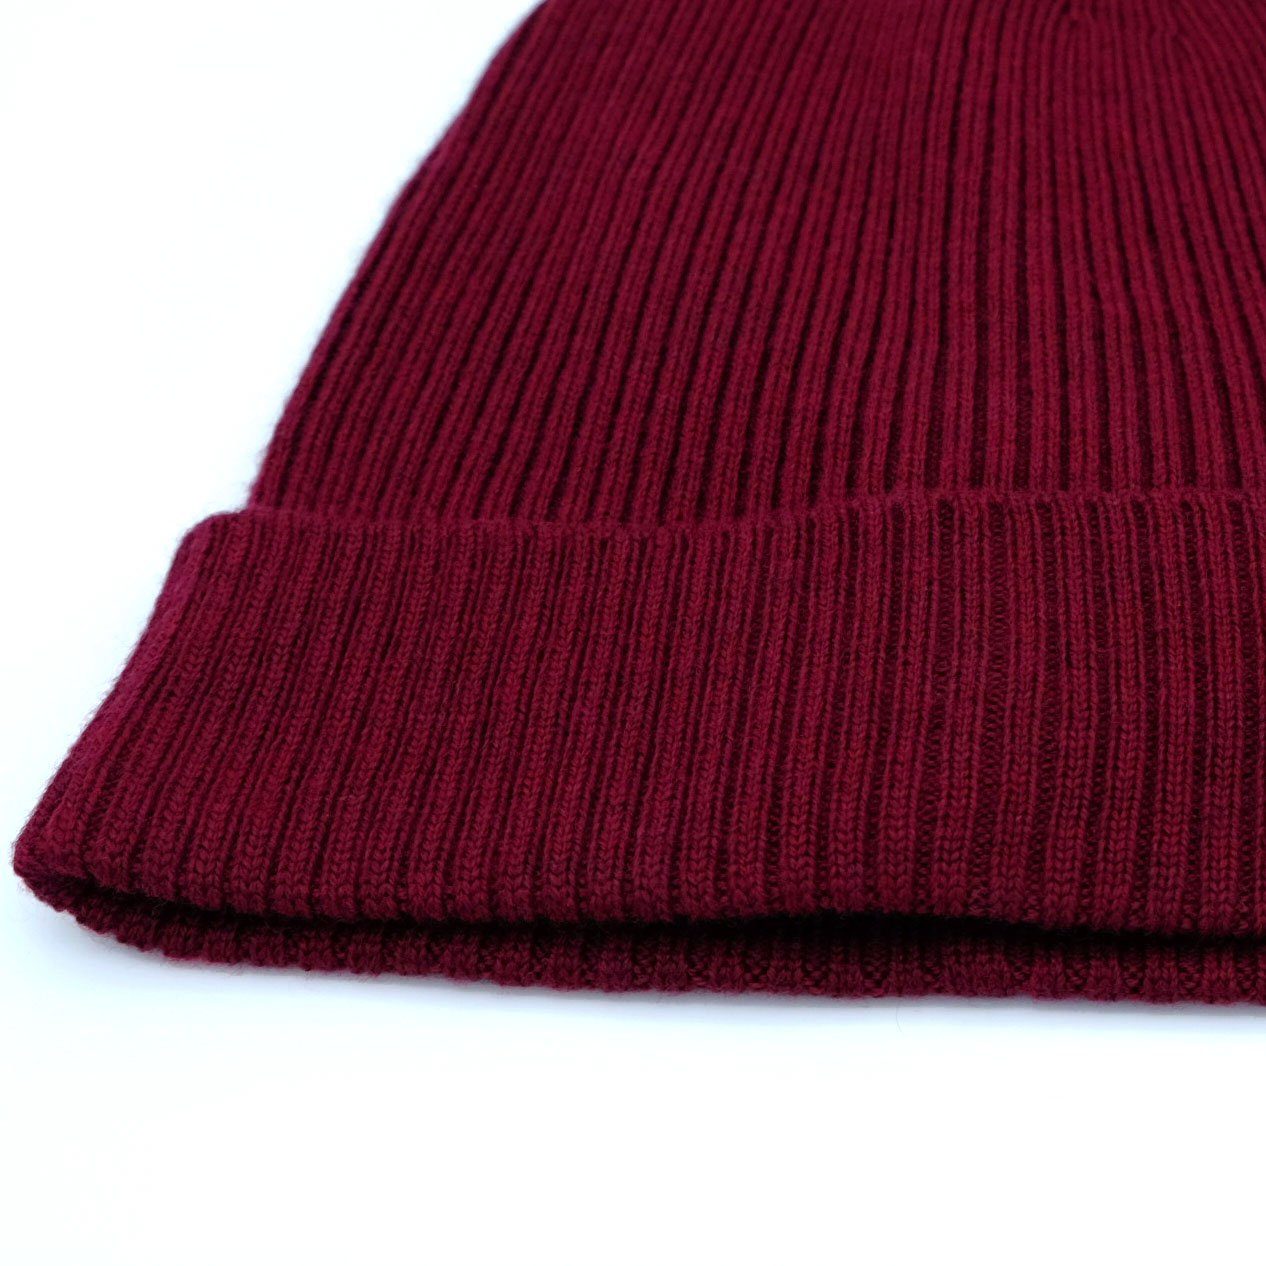 BEAZZ Strickmütze Wintermütze Wollmütze Damen warm weich WOLLE merlot Merino helles und 100% Feinstrick, rot